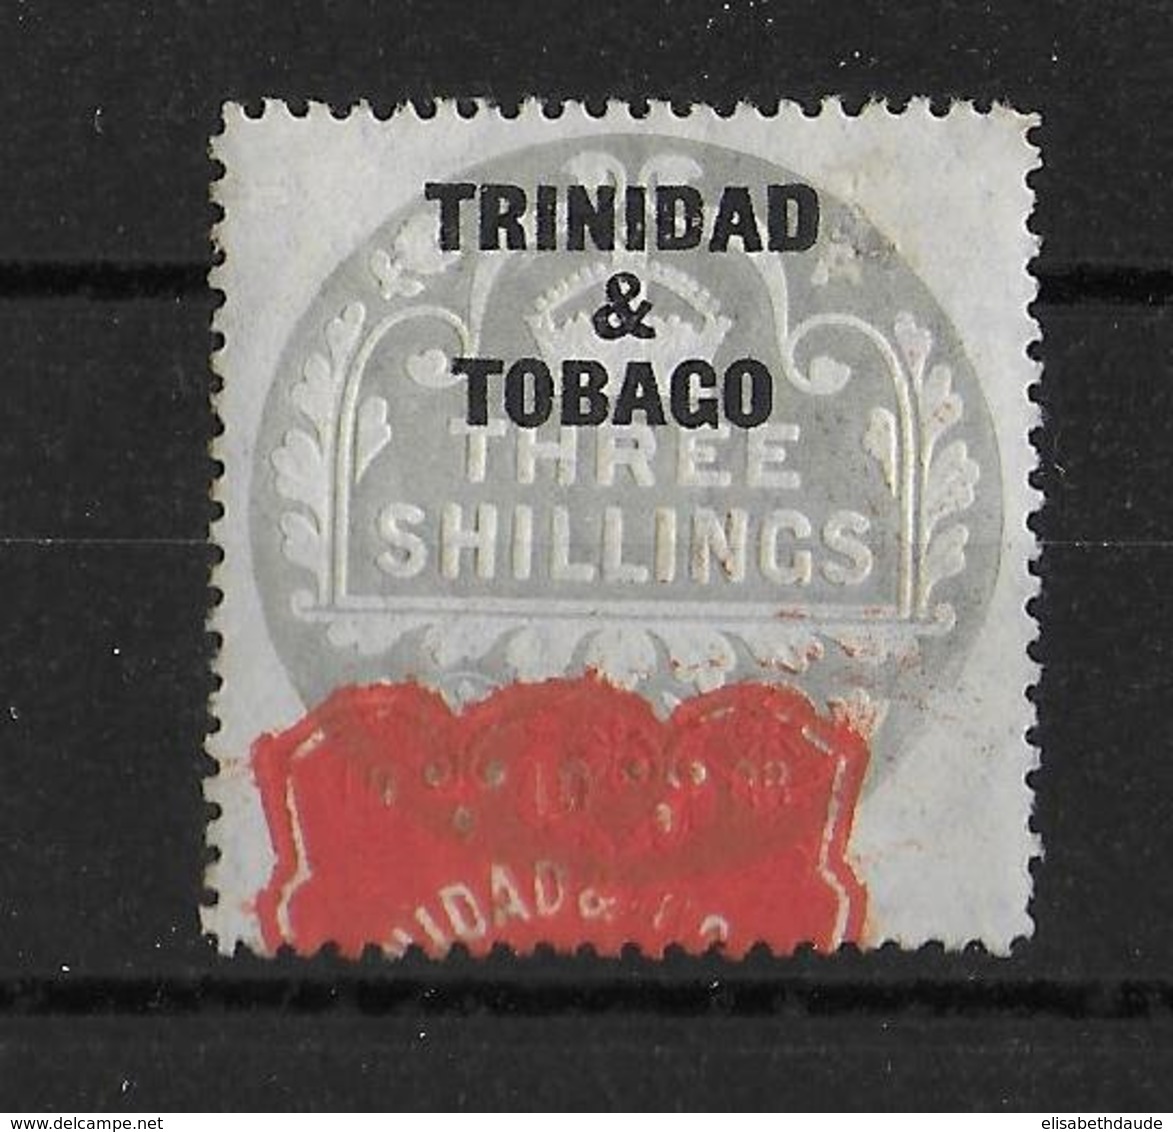 TRINIDAD & TOBAGO - TIMBRE FISCAL * - STAMP DUTY - Trinidad Y Tobago